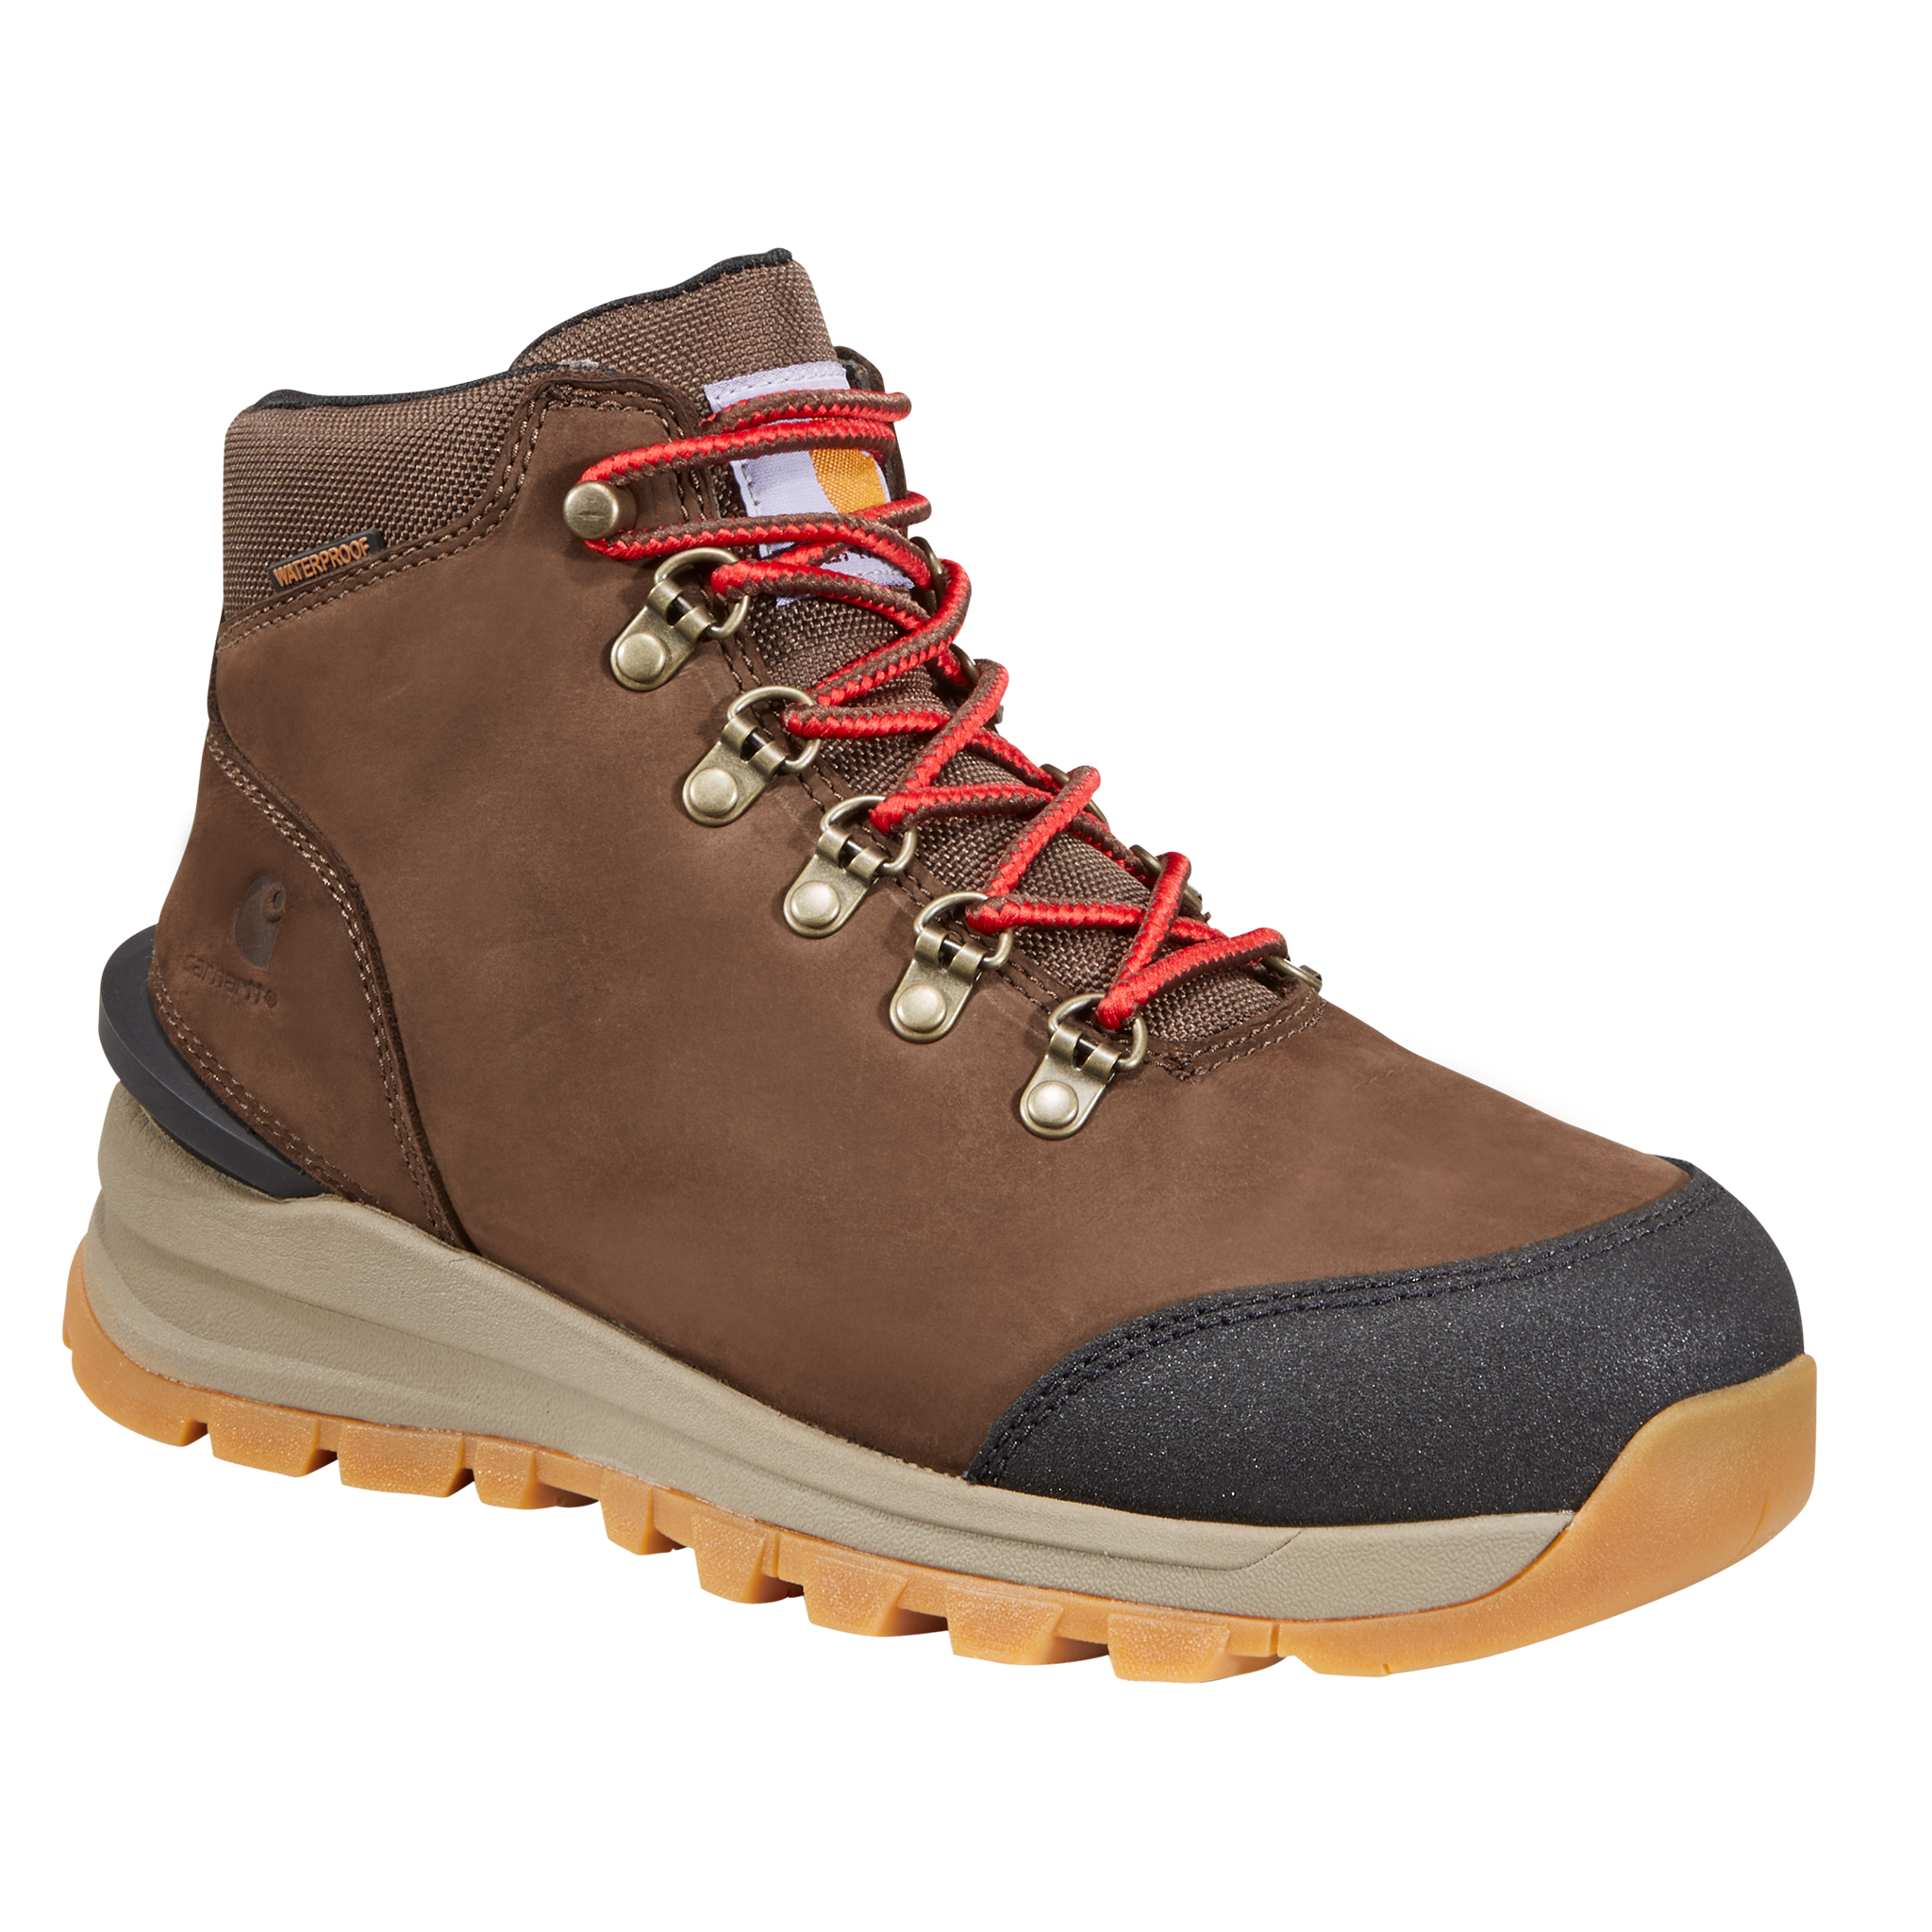 Carhartt Gilmore Waterproof Hiking Boots for Ladies - Dark Brown Nubuck - 11M